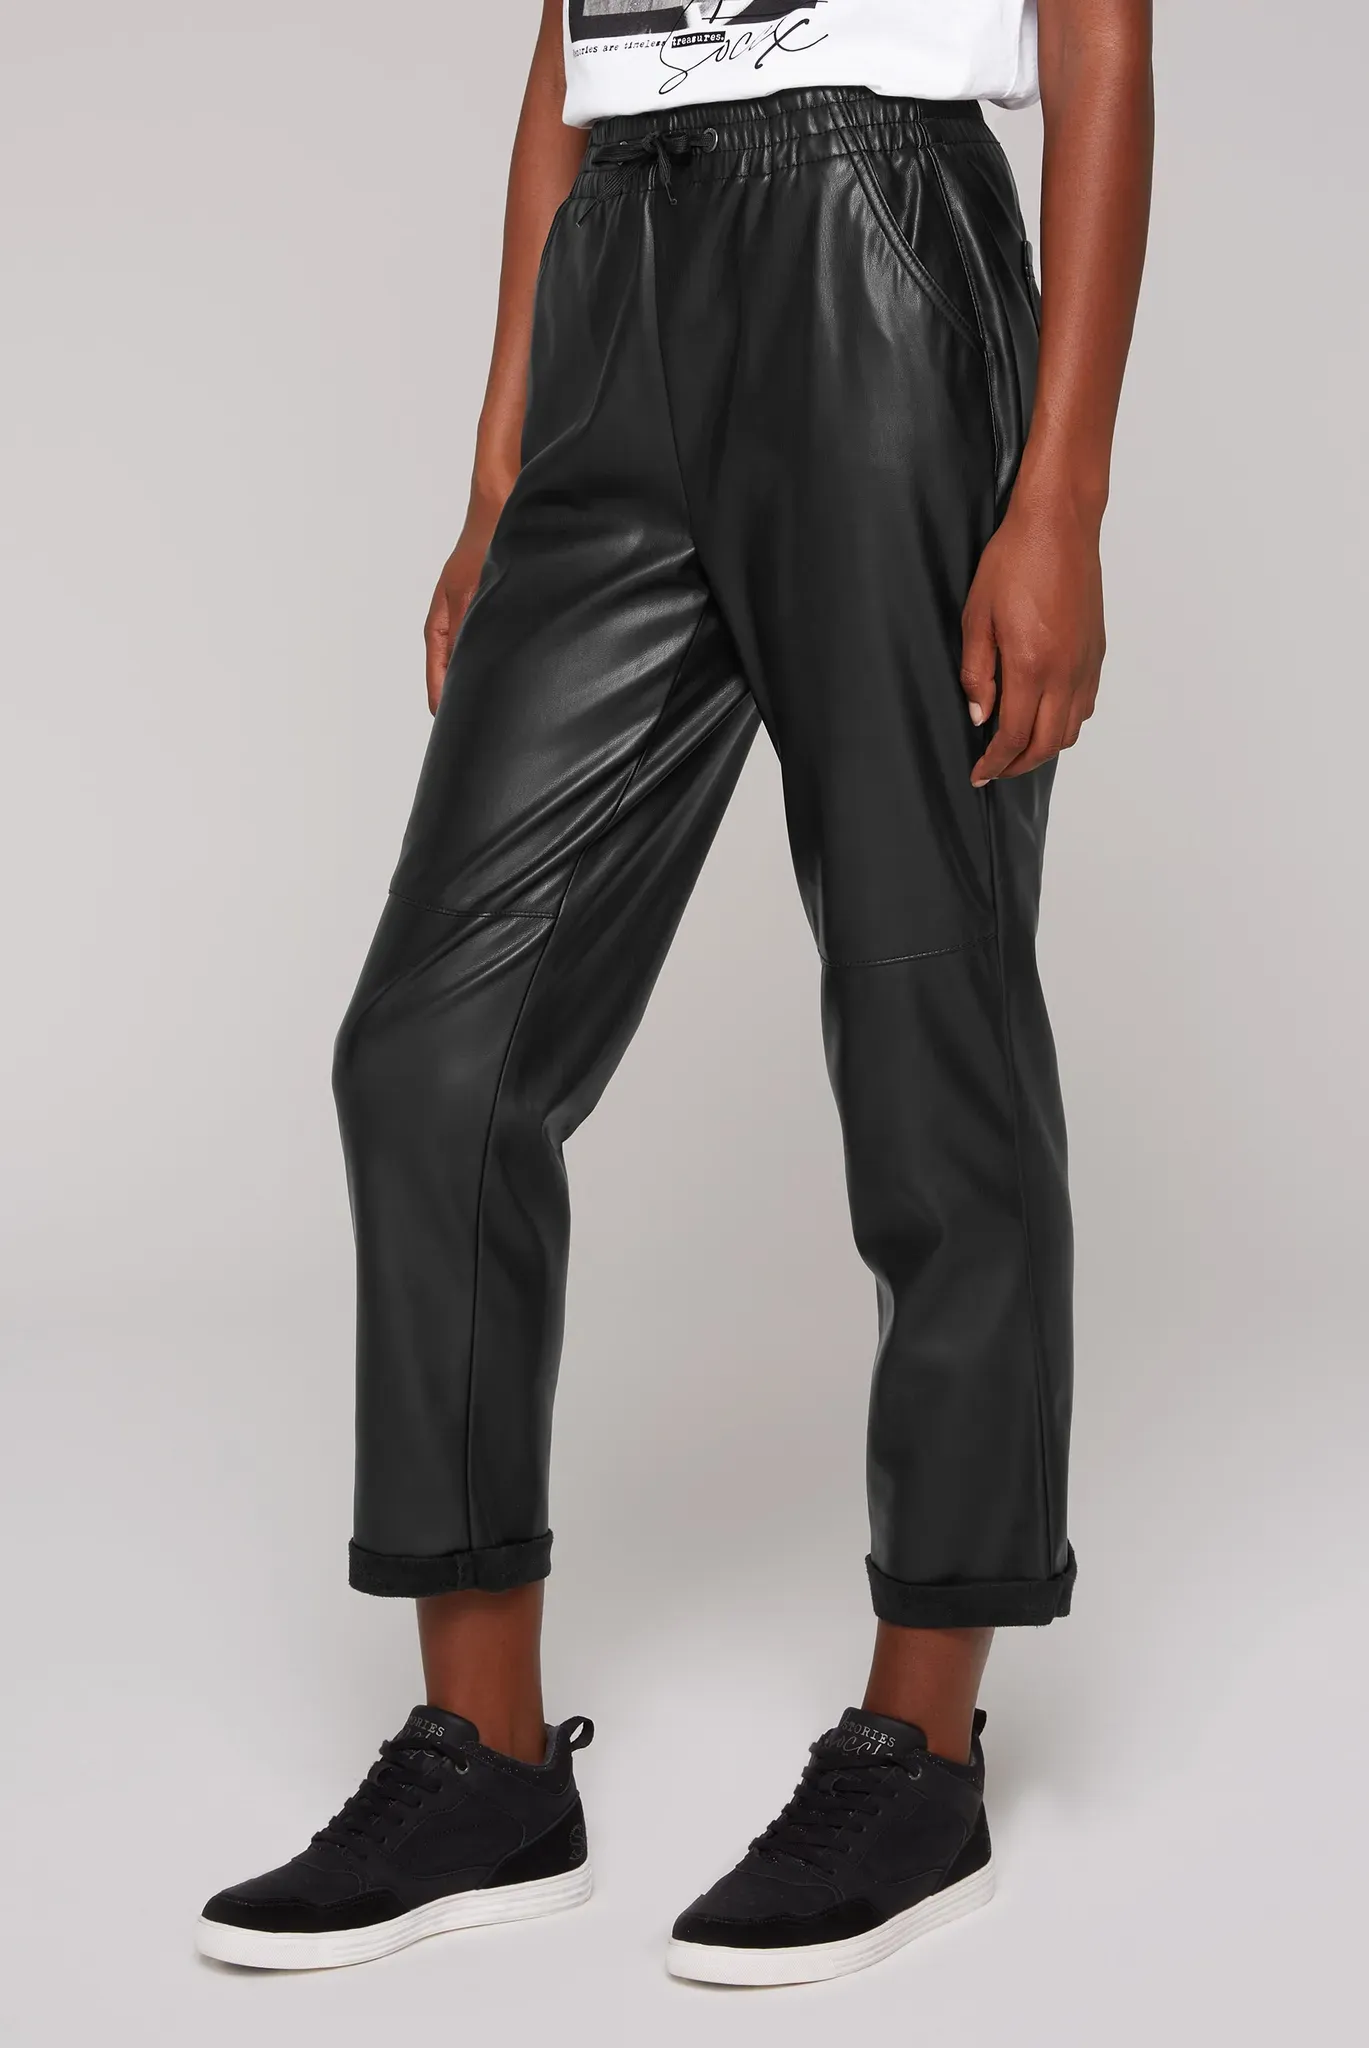 Lederimitathose SOCCX Gr. L, Normalgrößen, schwarz Damen Hosen Kunstlederhosen mit Gesäßtaschen